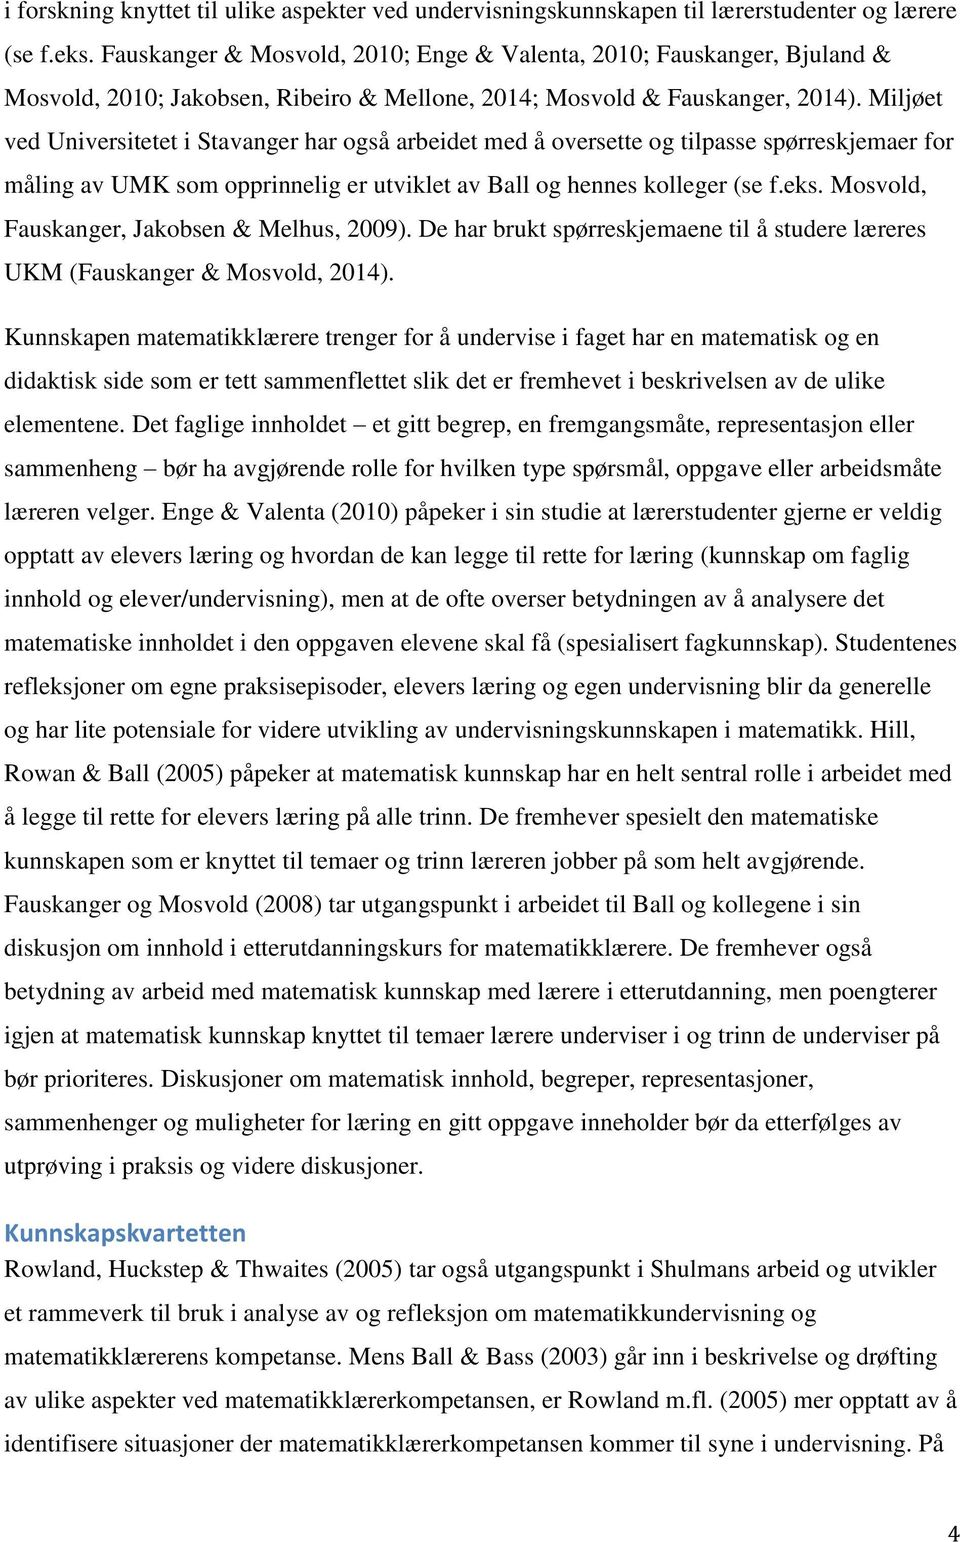 Miljøet ved Universitetet i Stavanger har også arbeidet med å oversette og tilpasse spørreskjemaer for måling av UMK som opprinnelig er utviklet av Ball og hennes kolleger (se f.eks.